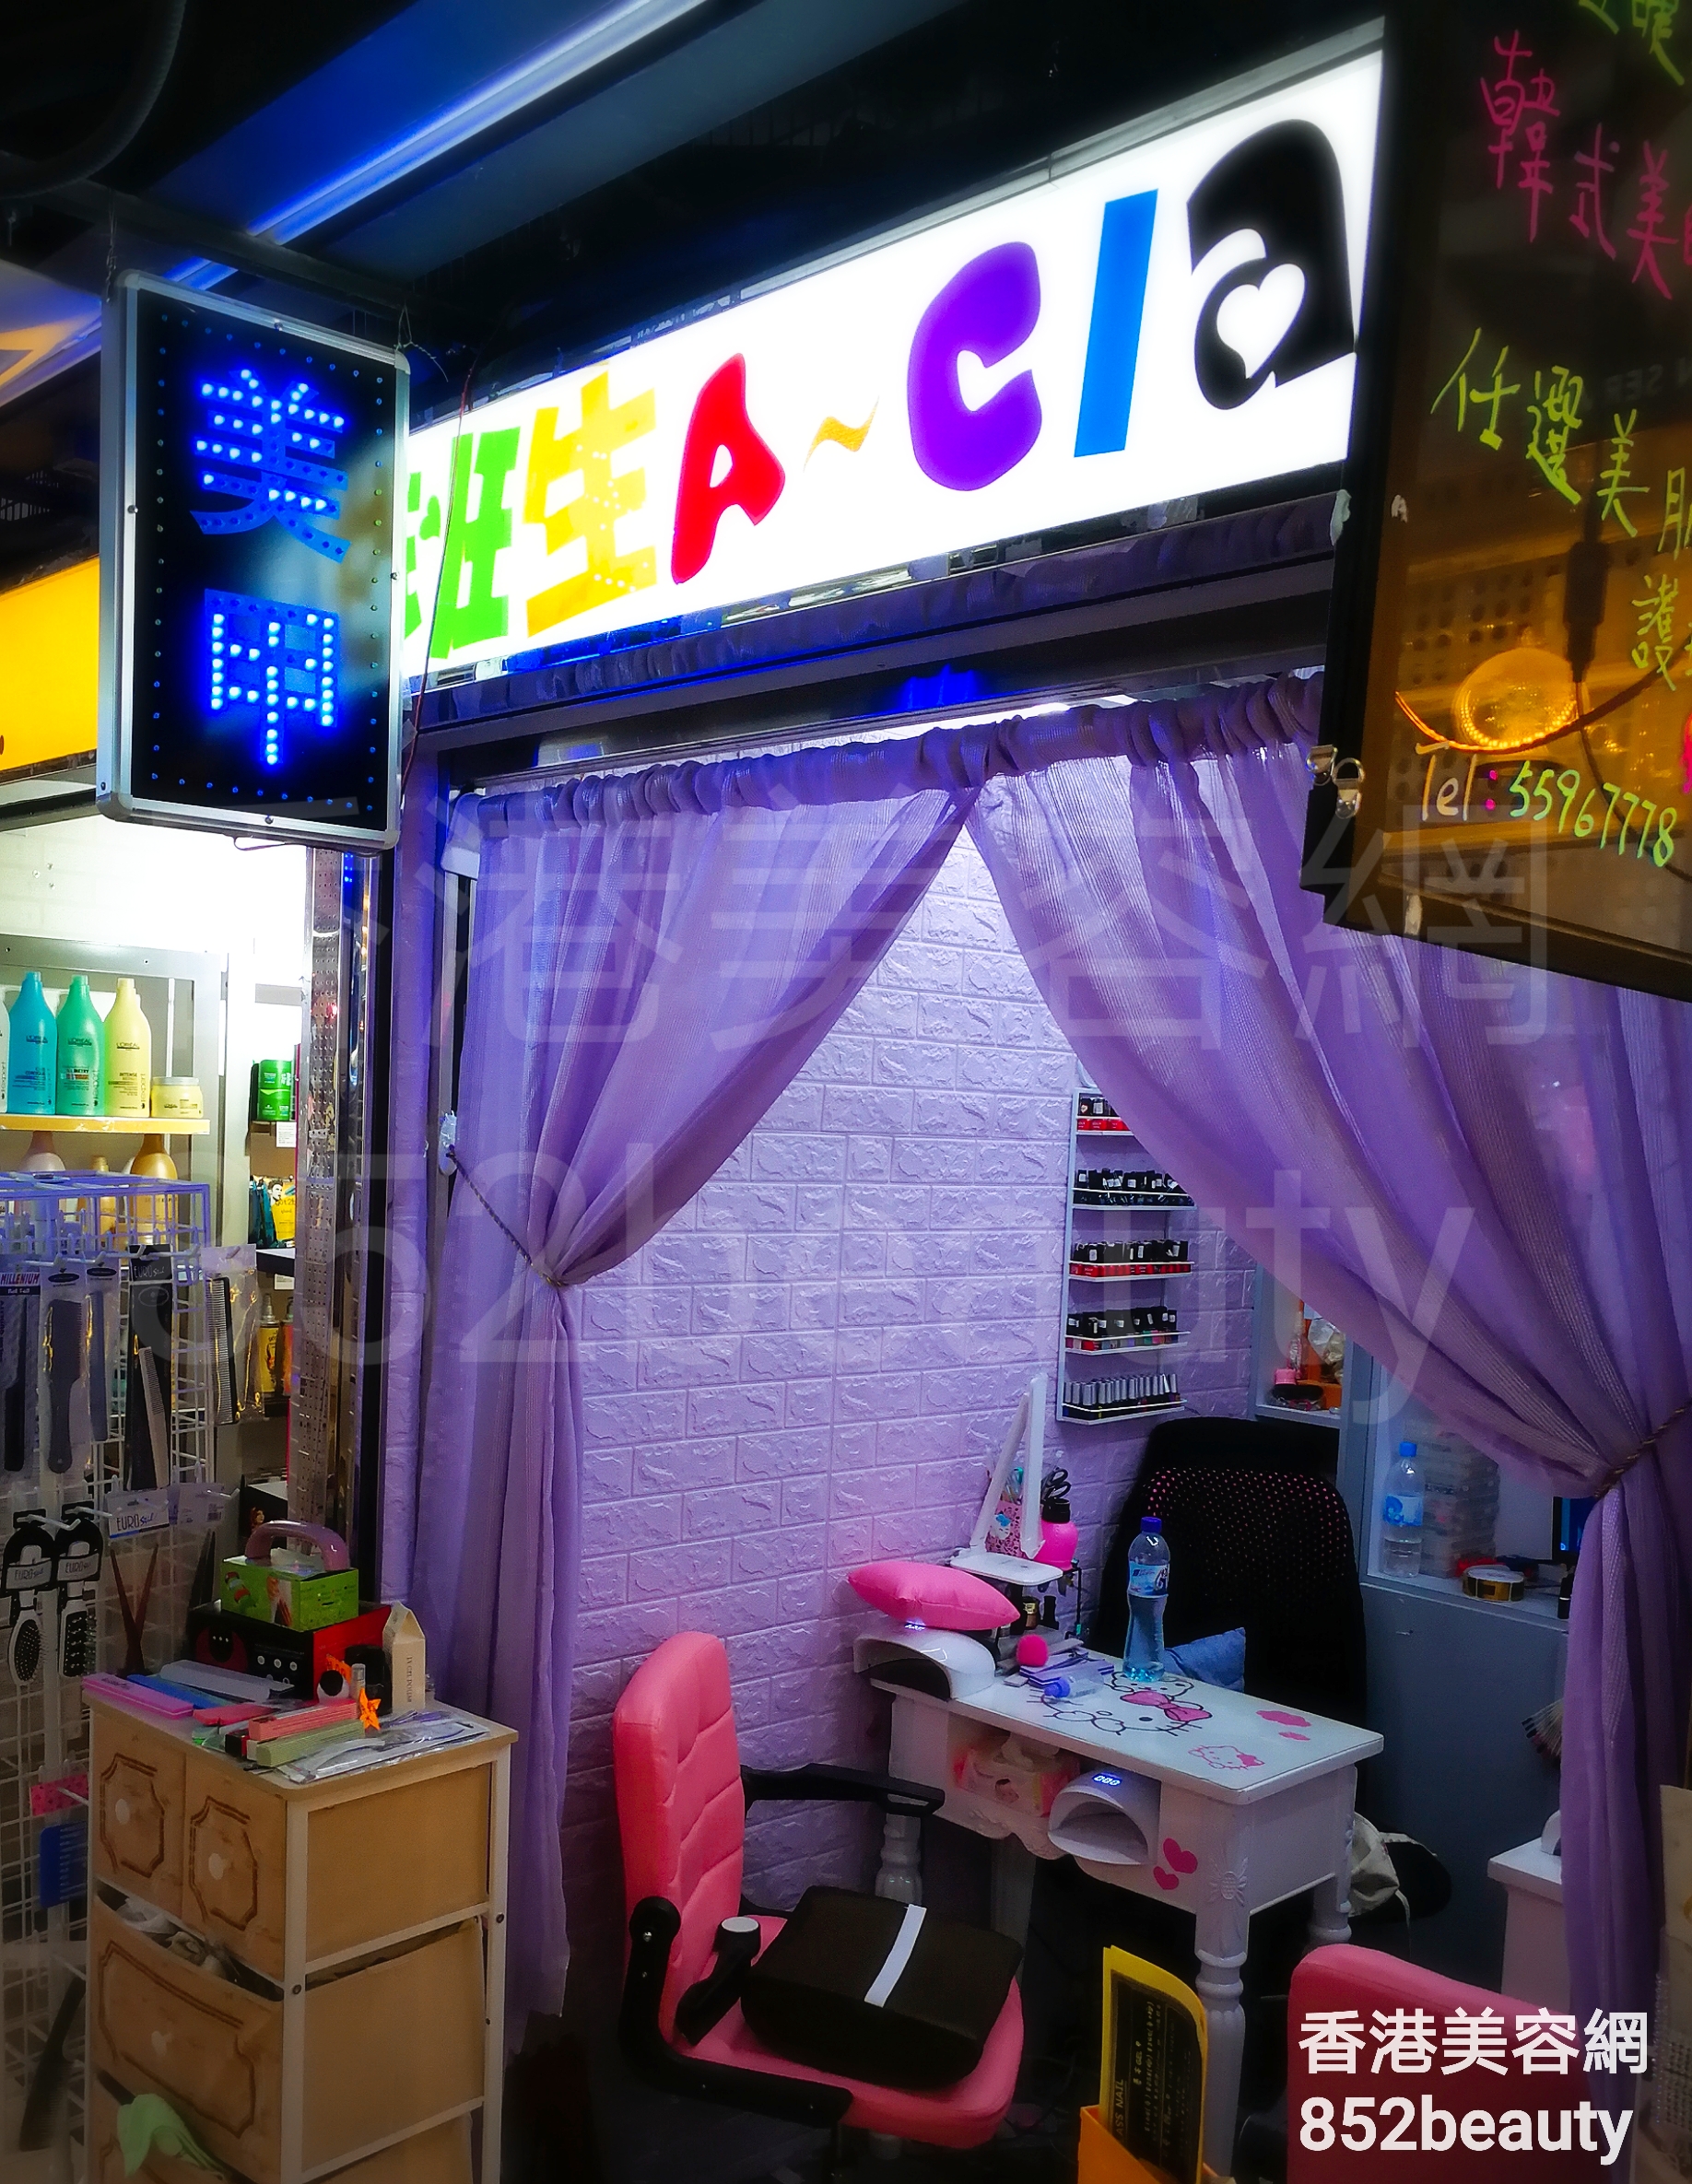 香港美容網 Hong Kong Beauty Salon 美容院 / 美容師: 甲班生 A-CLASS NAIL